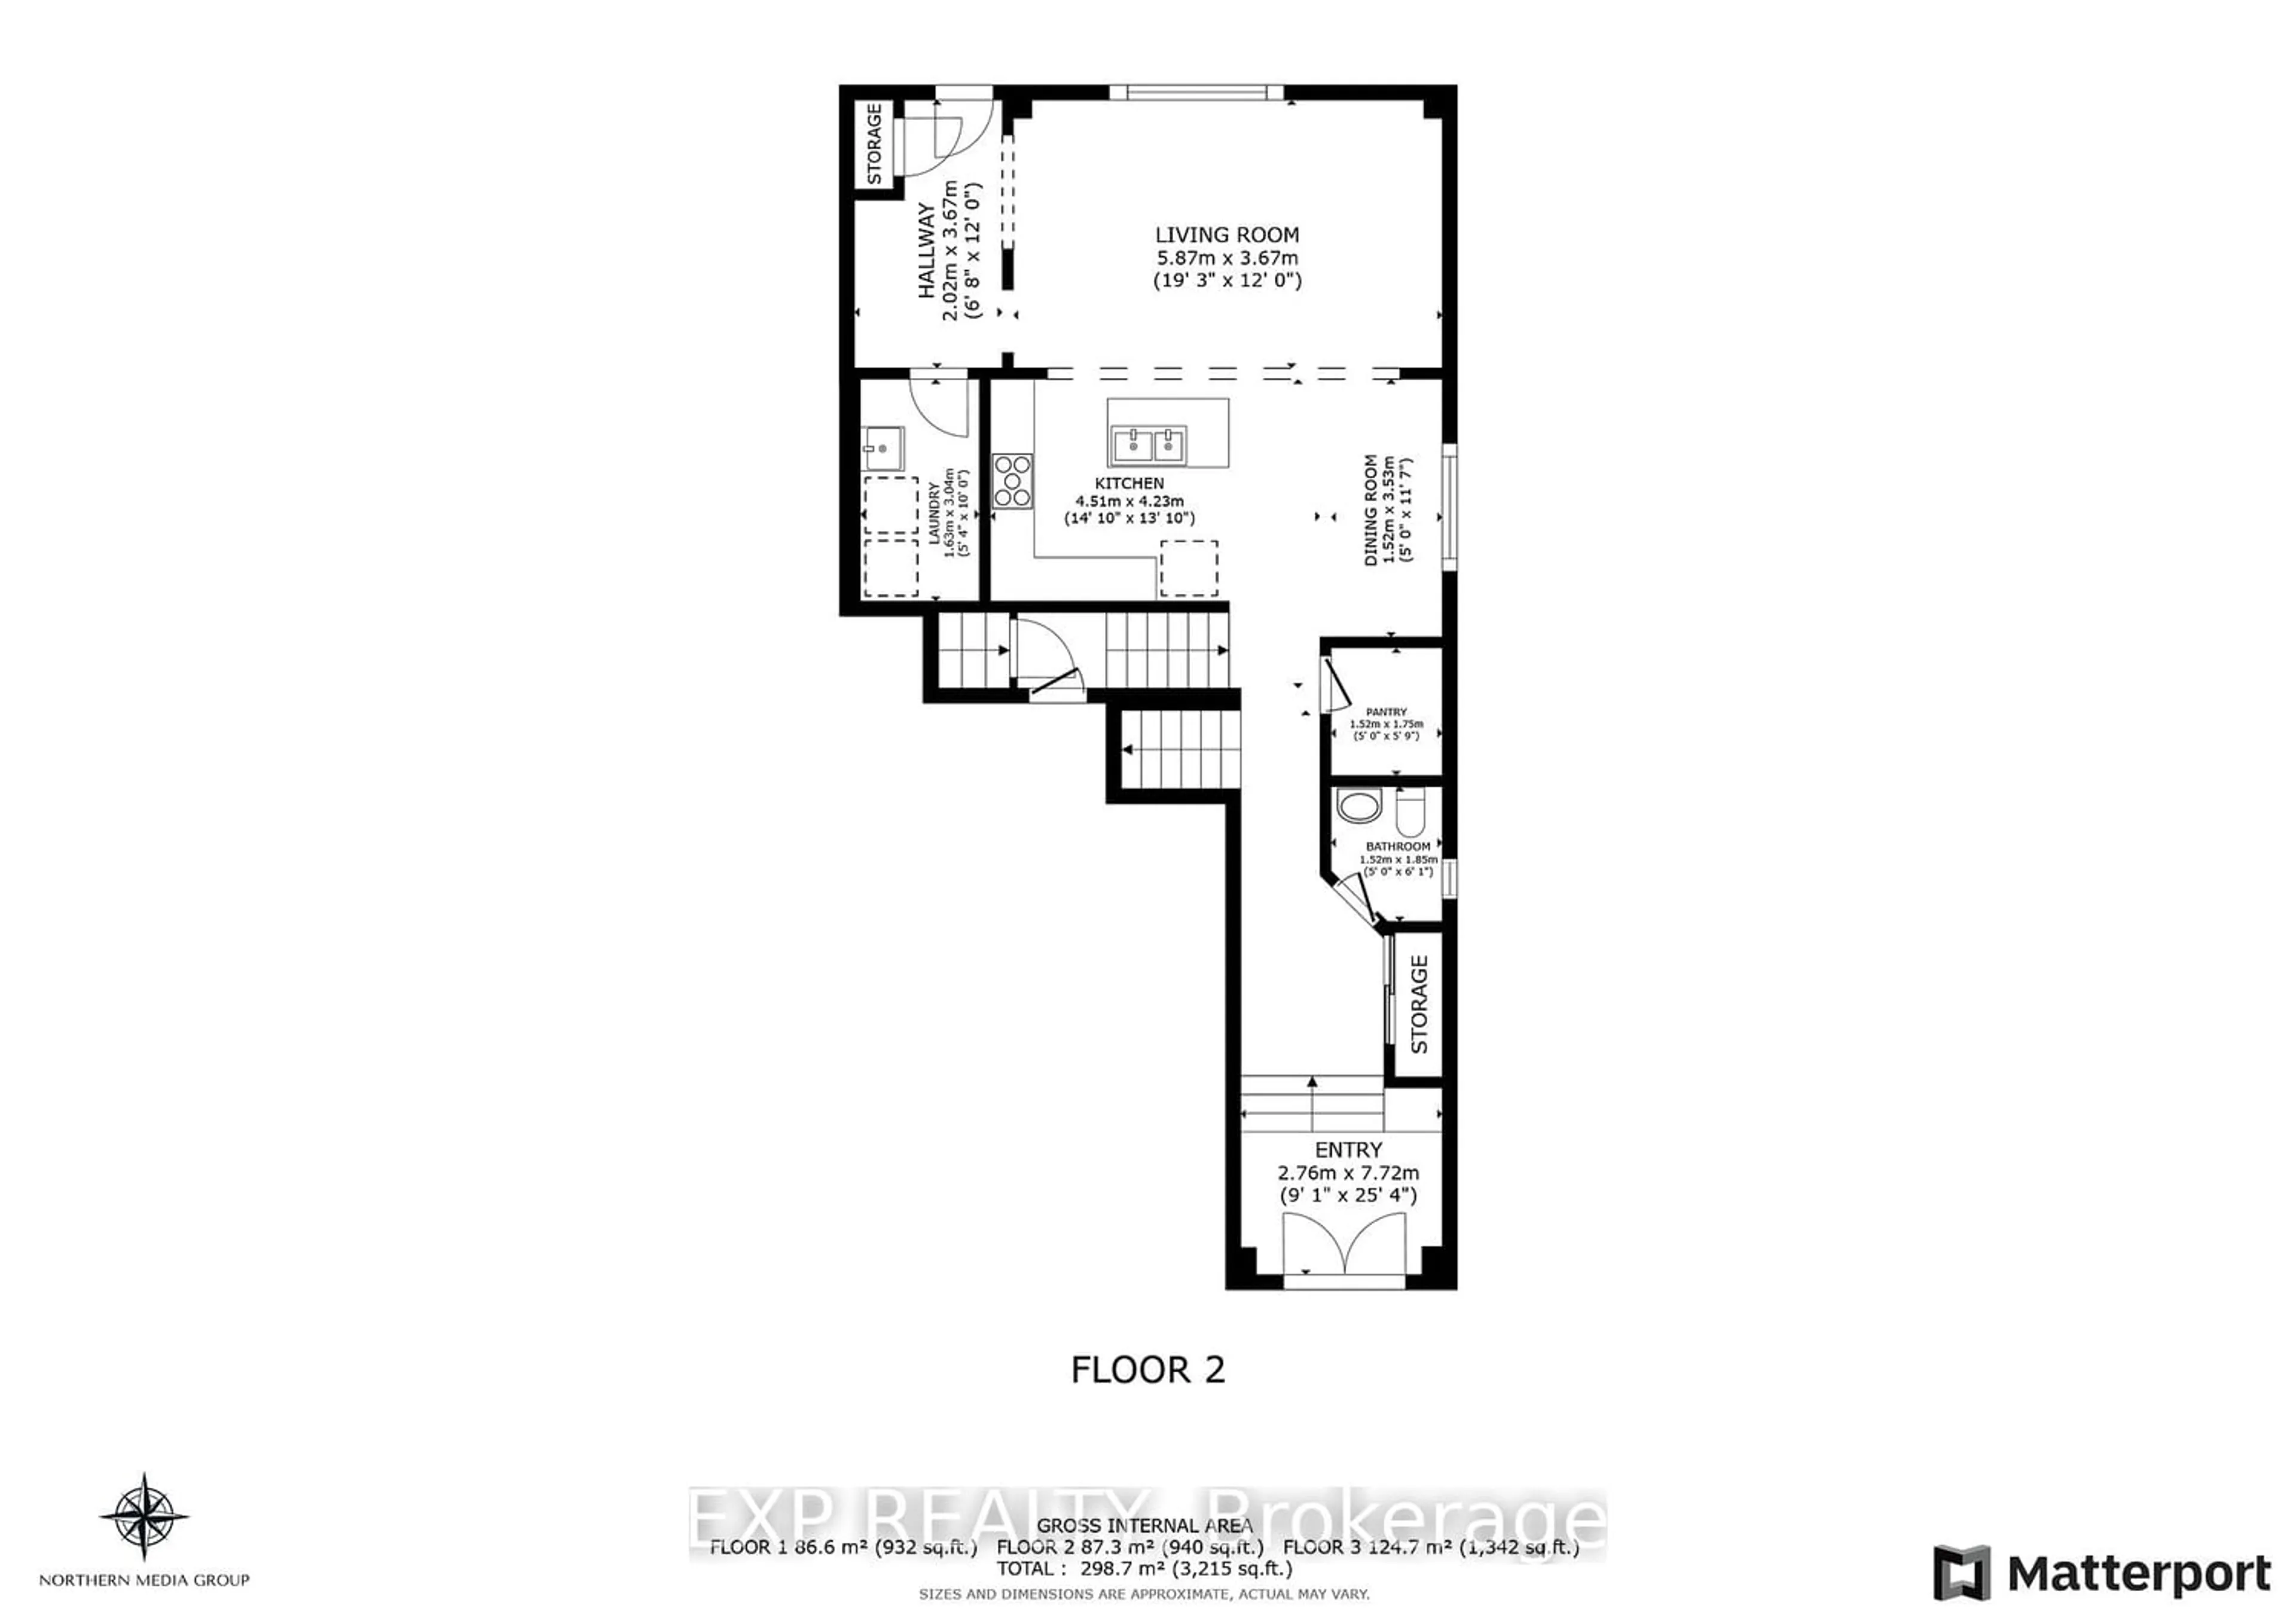 Floor plan for 7833 Longhouse Lane, Niagara Falls Ontario L2H 2Y6